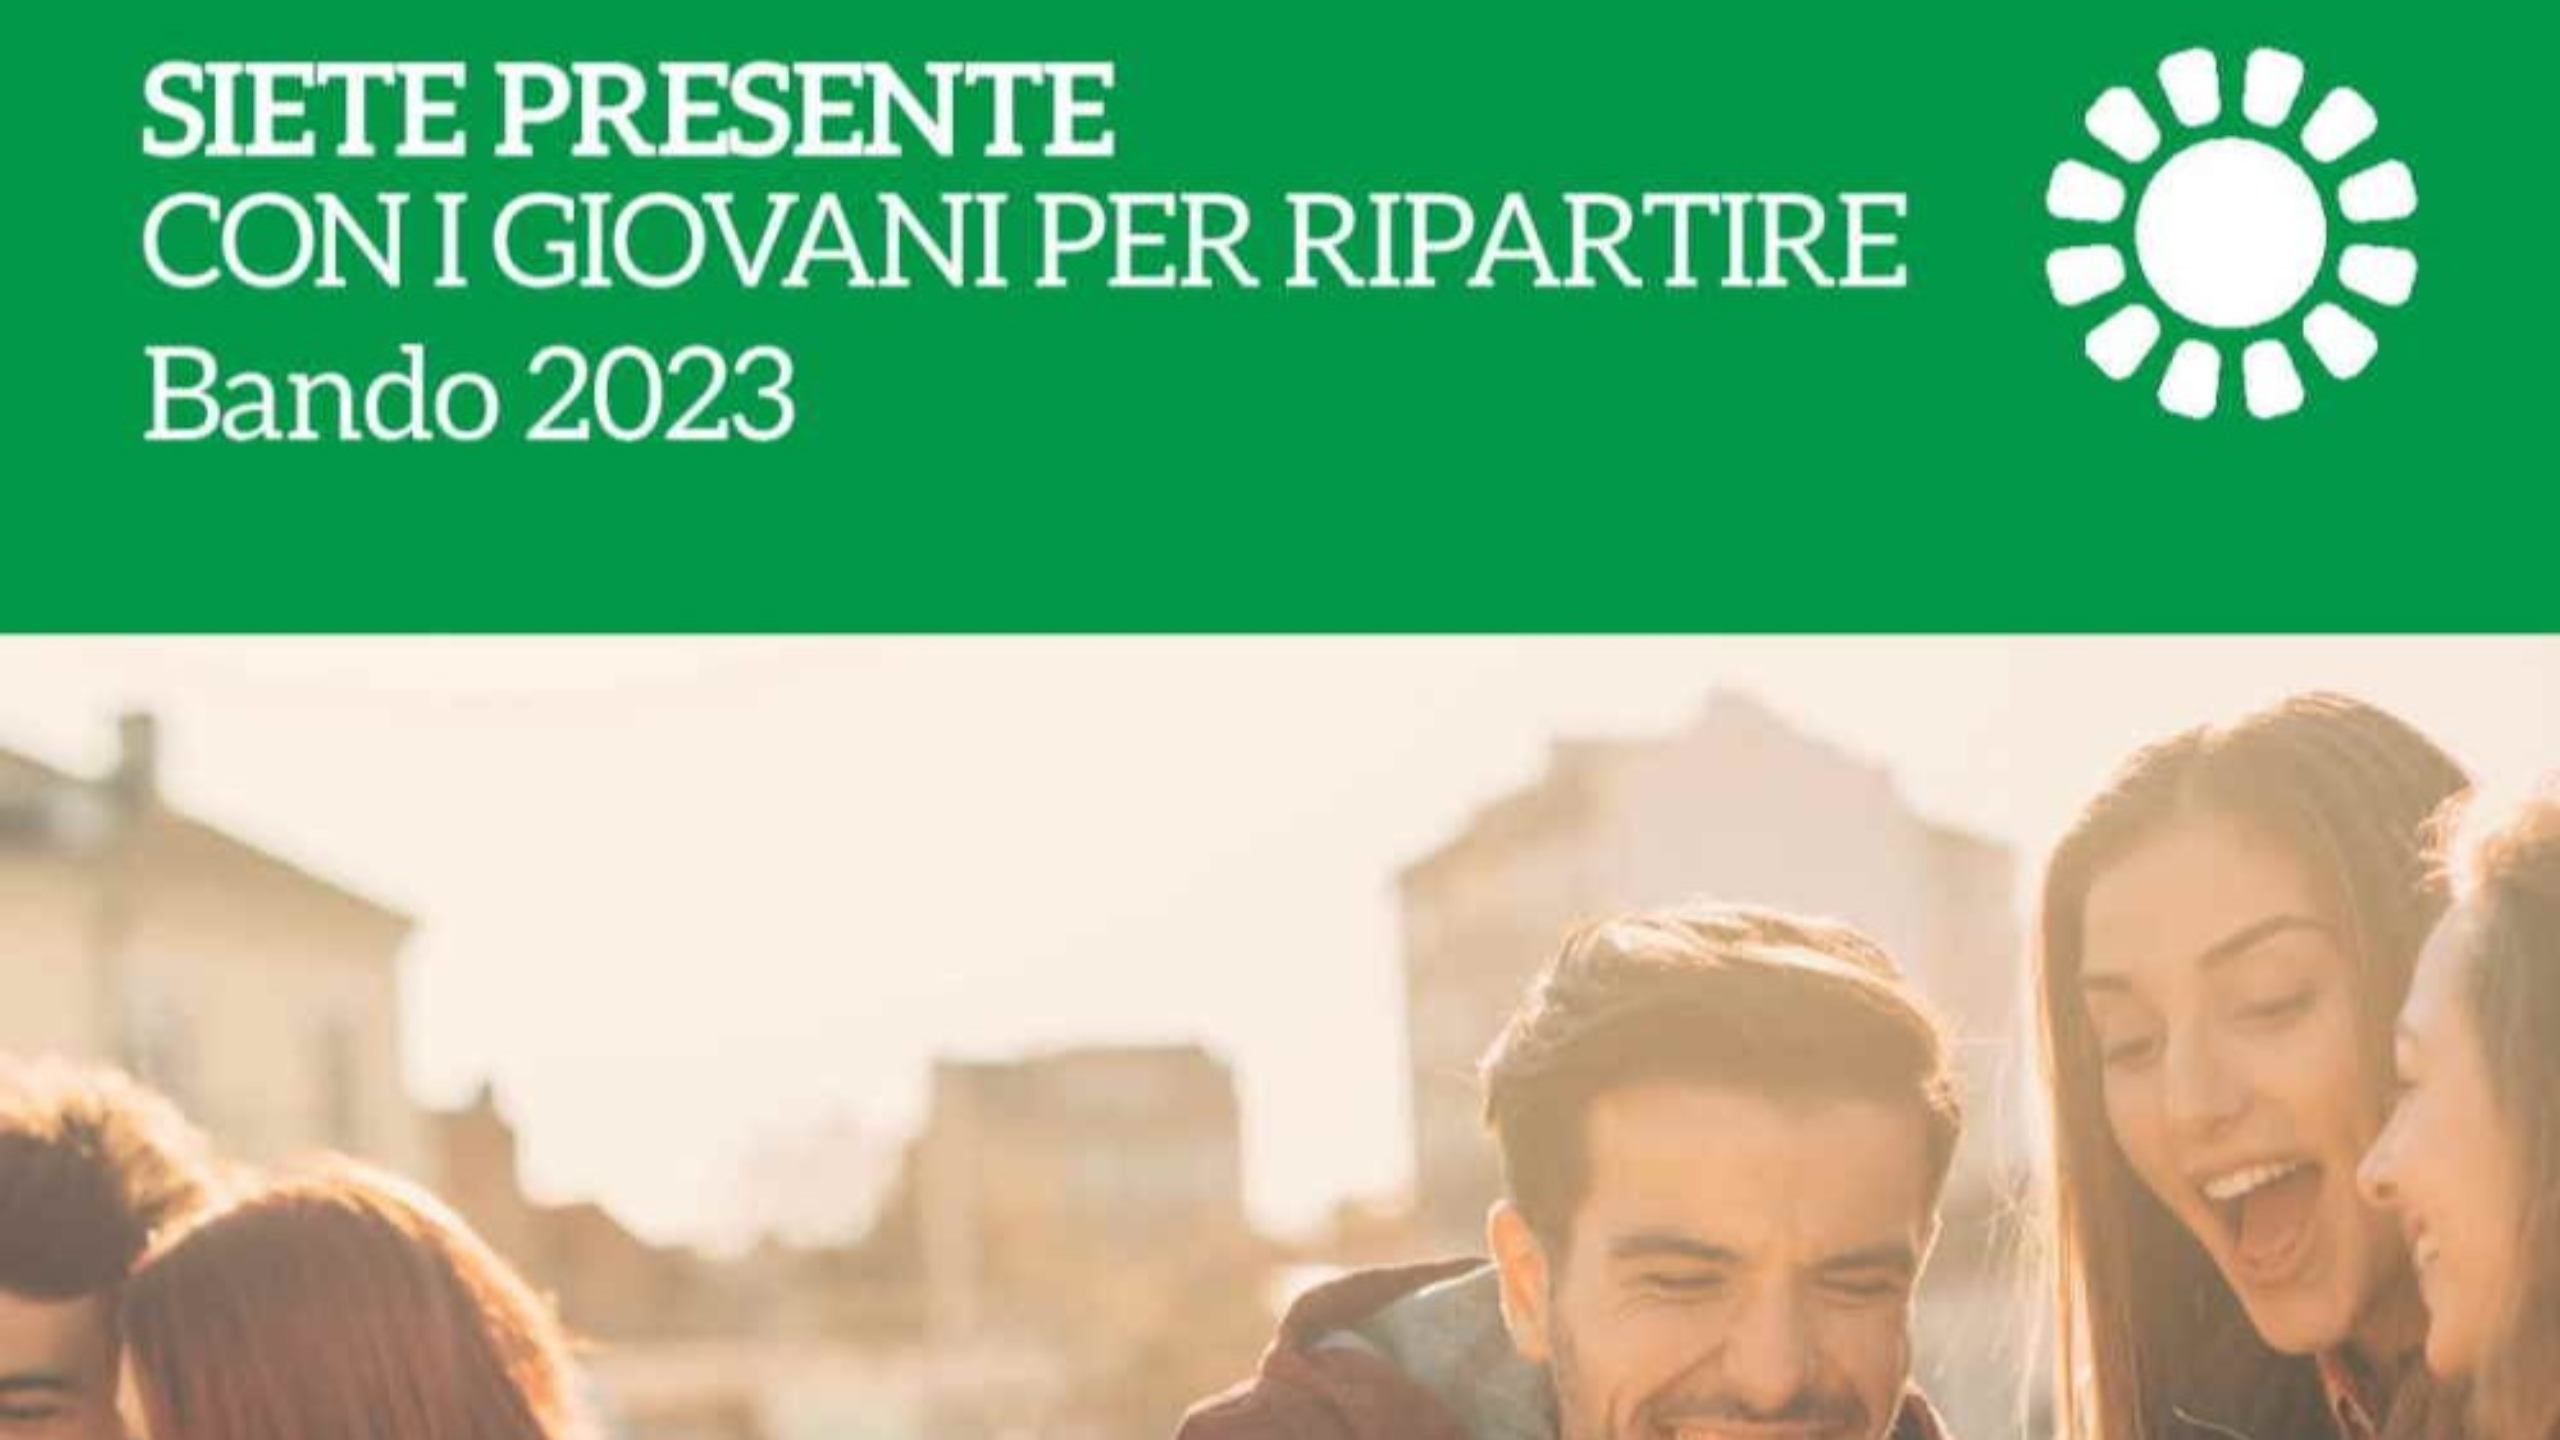 14 progetti dell’area di Firenze riceveranno 98mila euro di finanziamenti Giovanisì, obbiettivo è promuovere l’associazionismo toscano